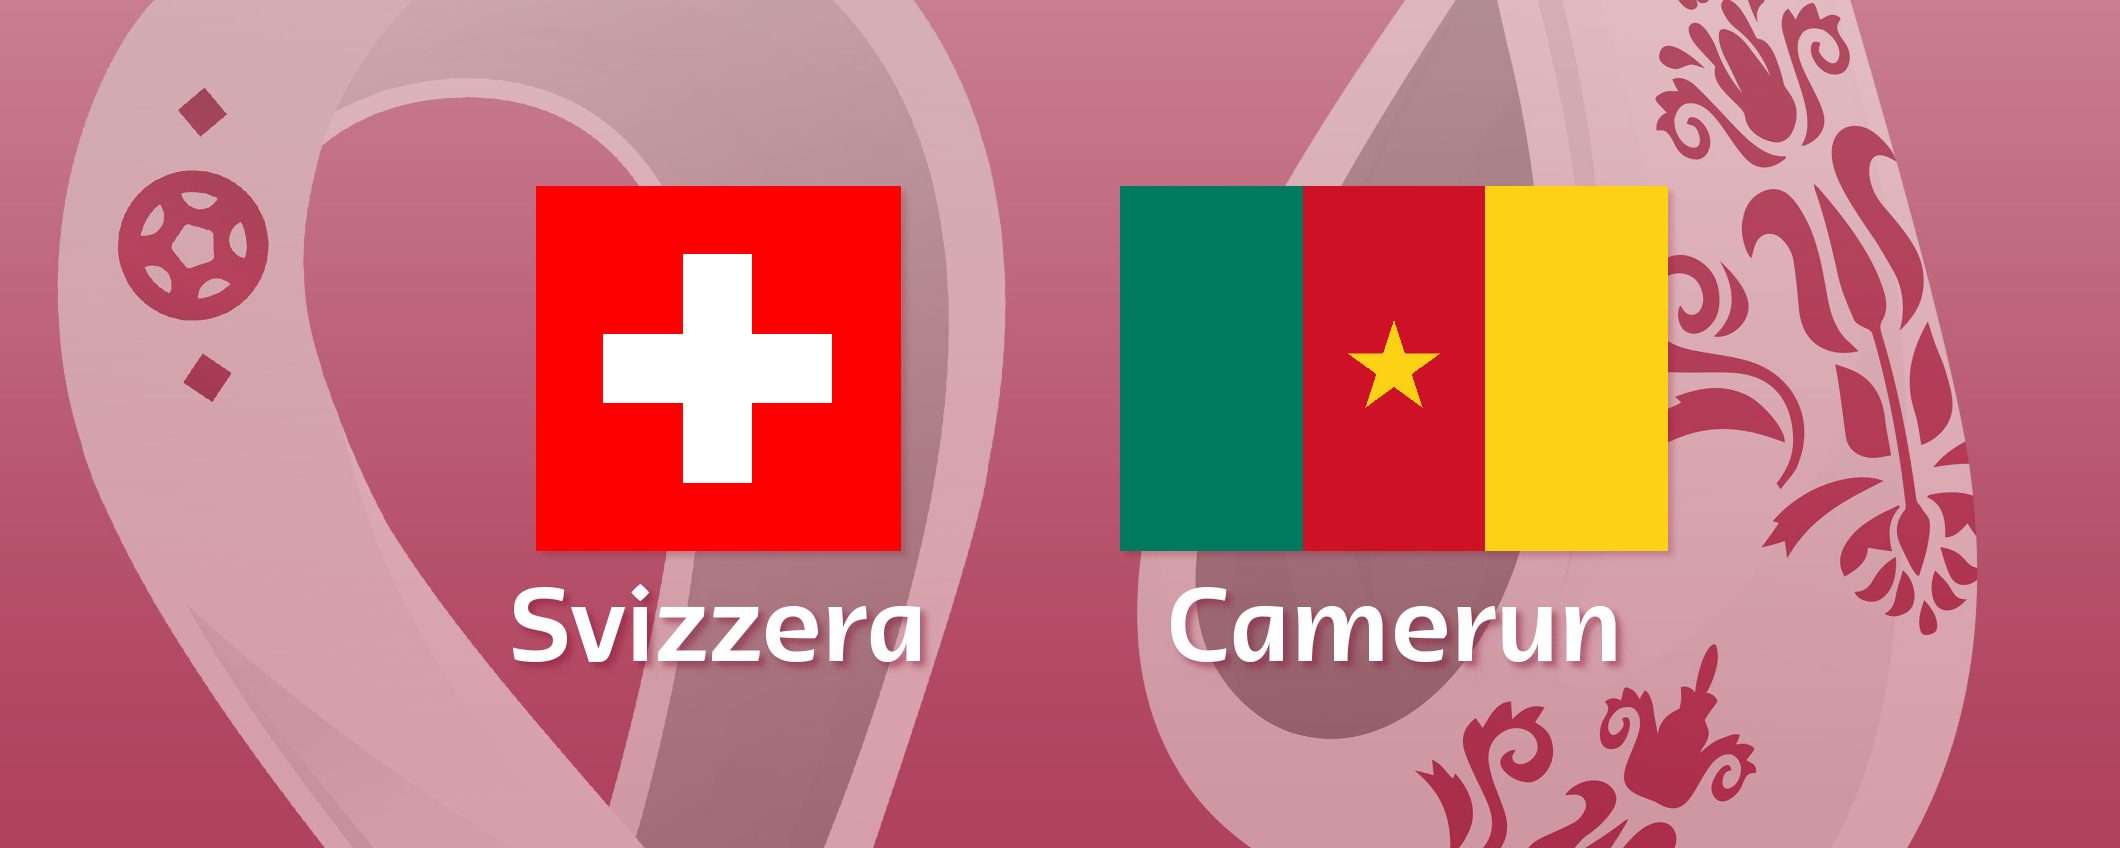 Come vedere Svizzera-Camerun in streaming (Mondiali)